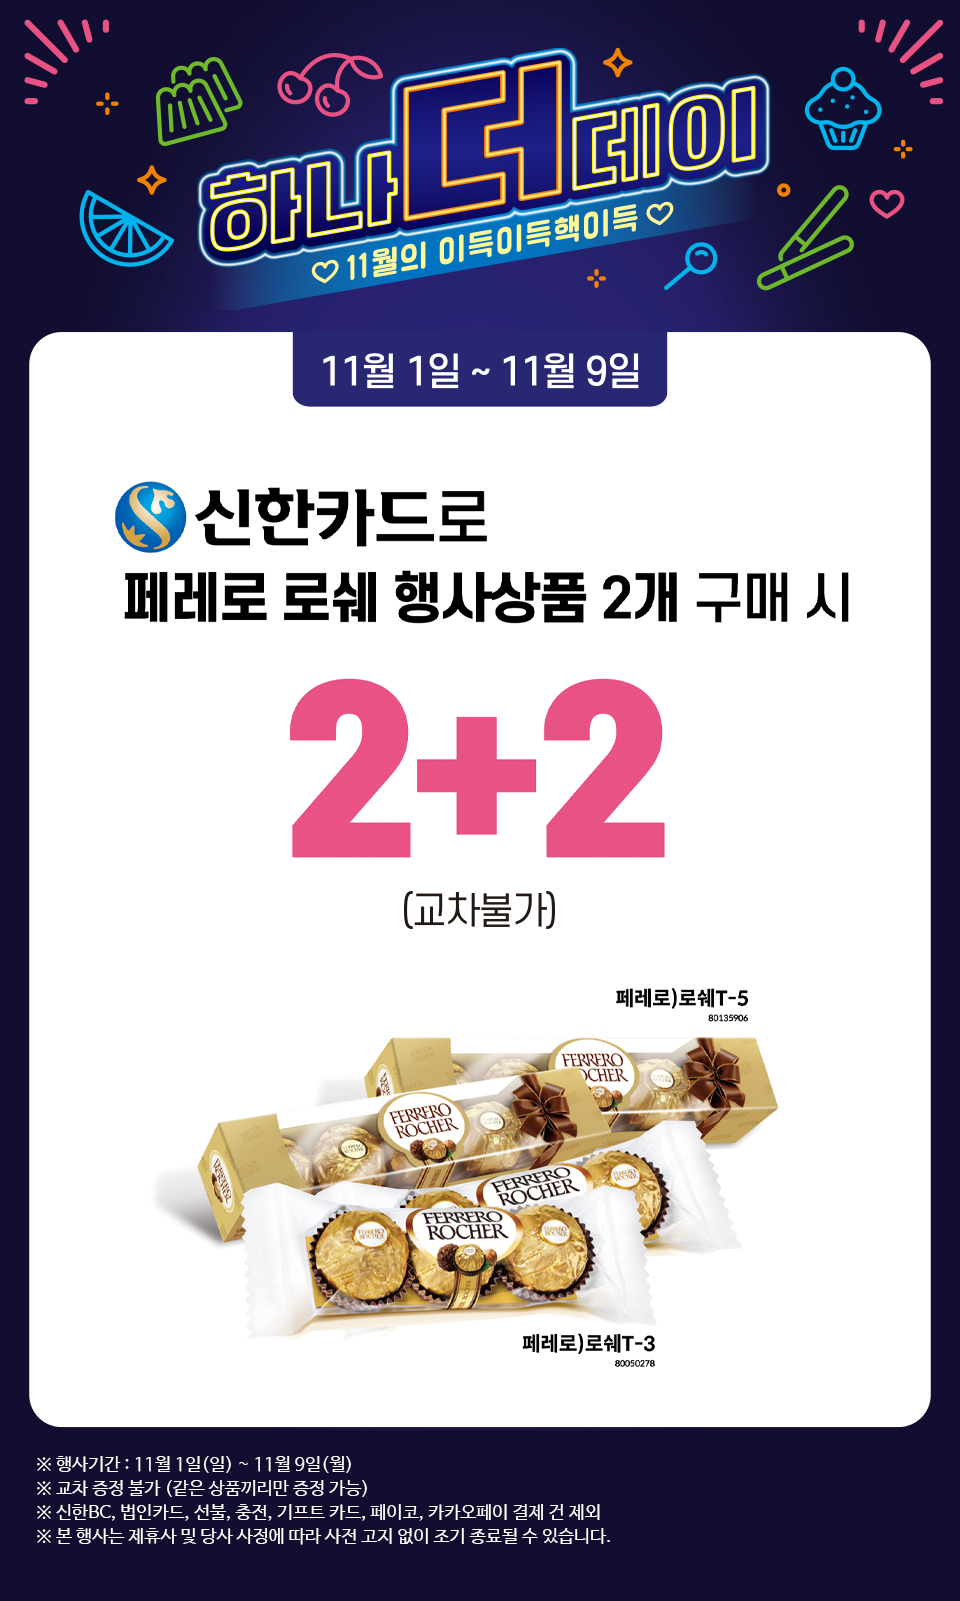 신한카드로 페레로 로쉐 행사상품 2개 구매 시 2+2 - 하단 상세설명